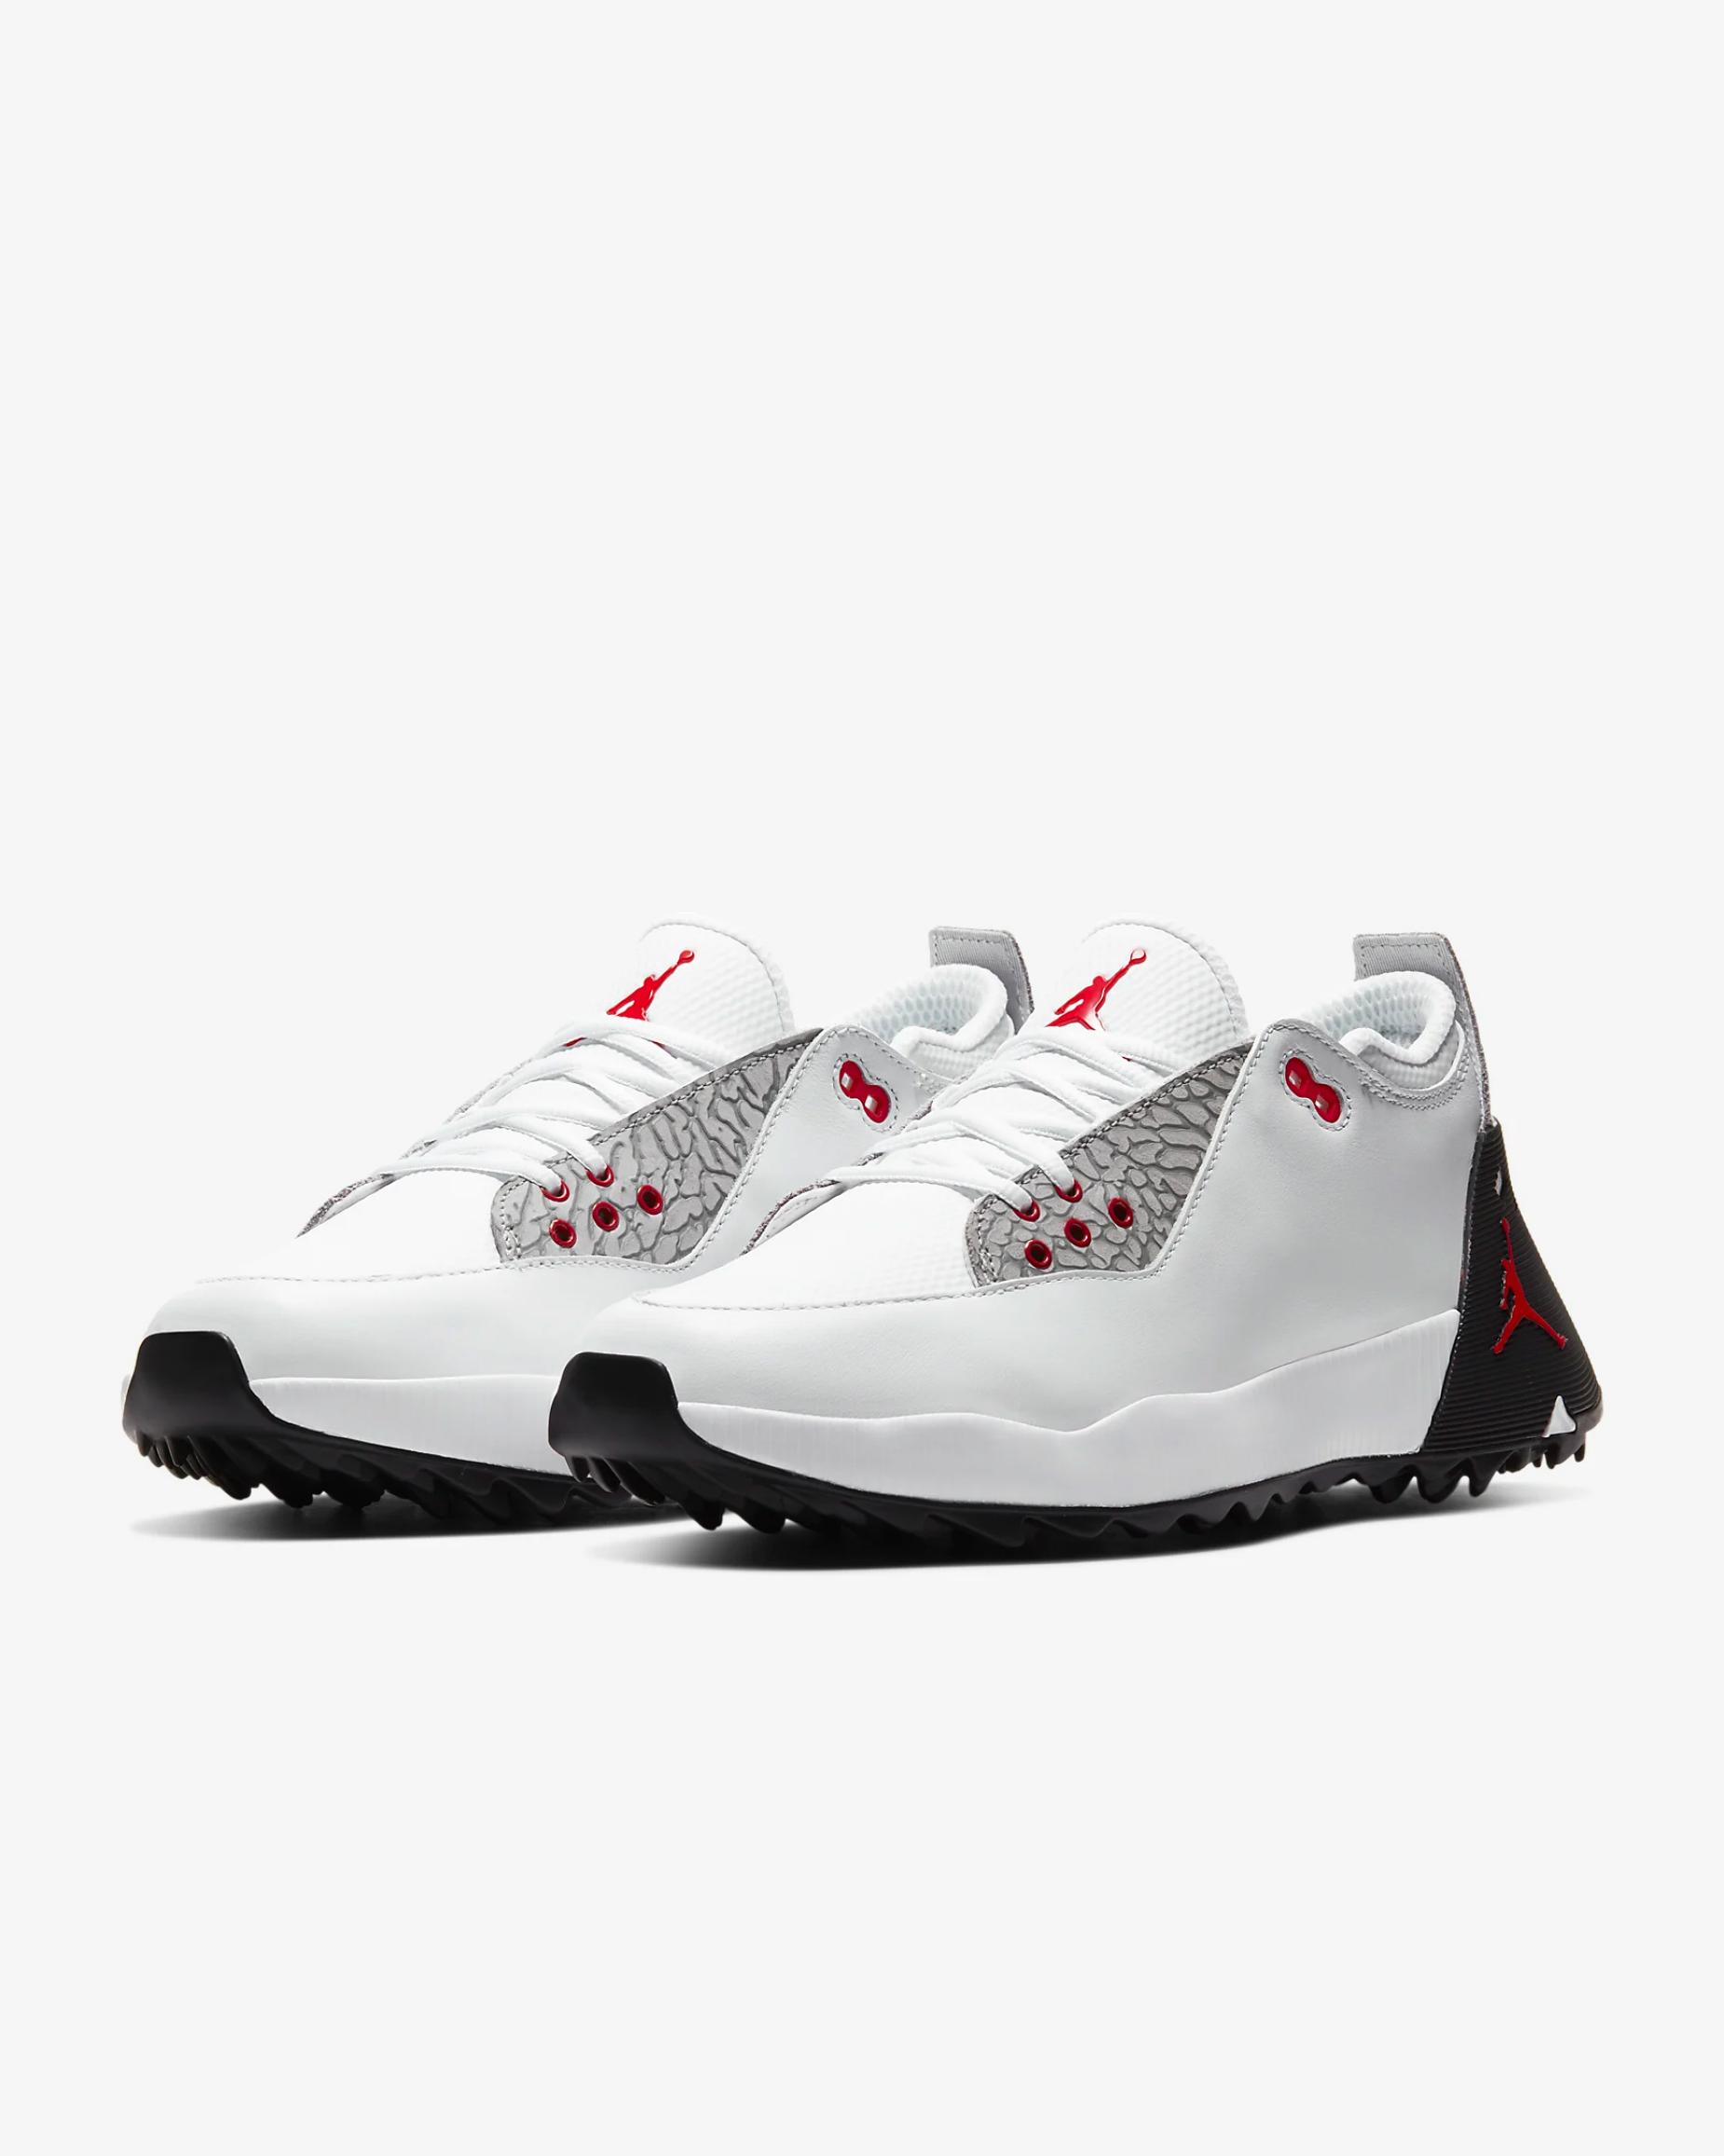 Nike releases spikeless Jordan golf shoes Golf Digest